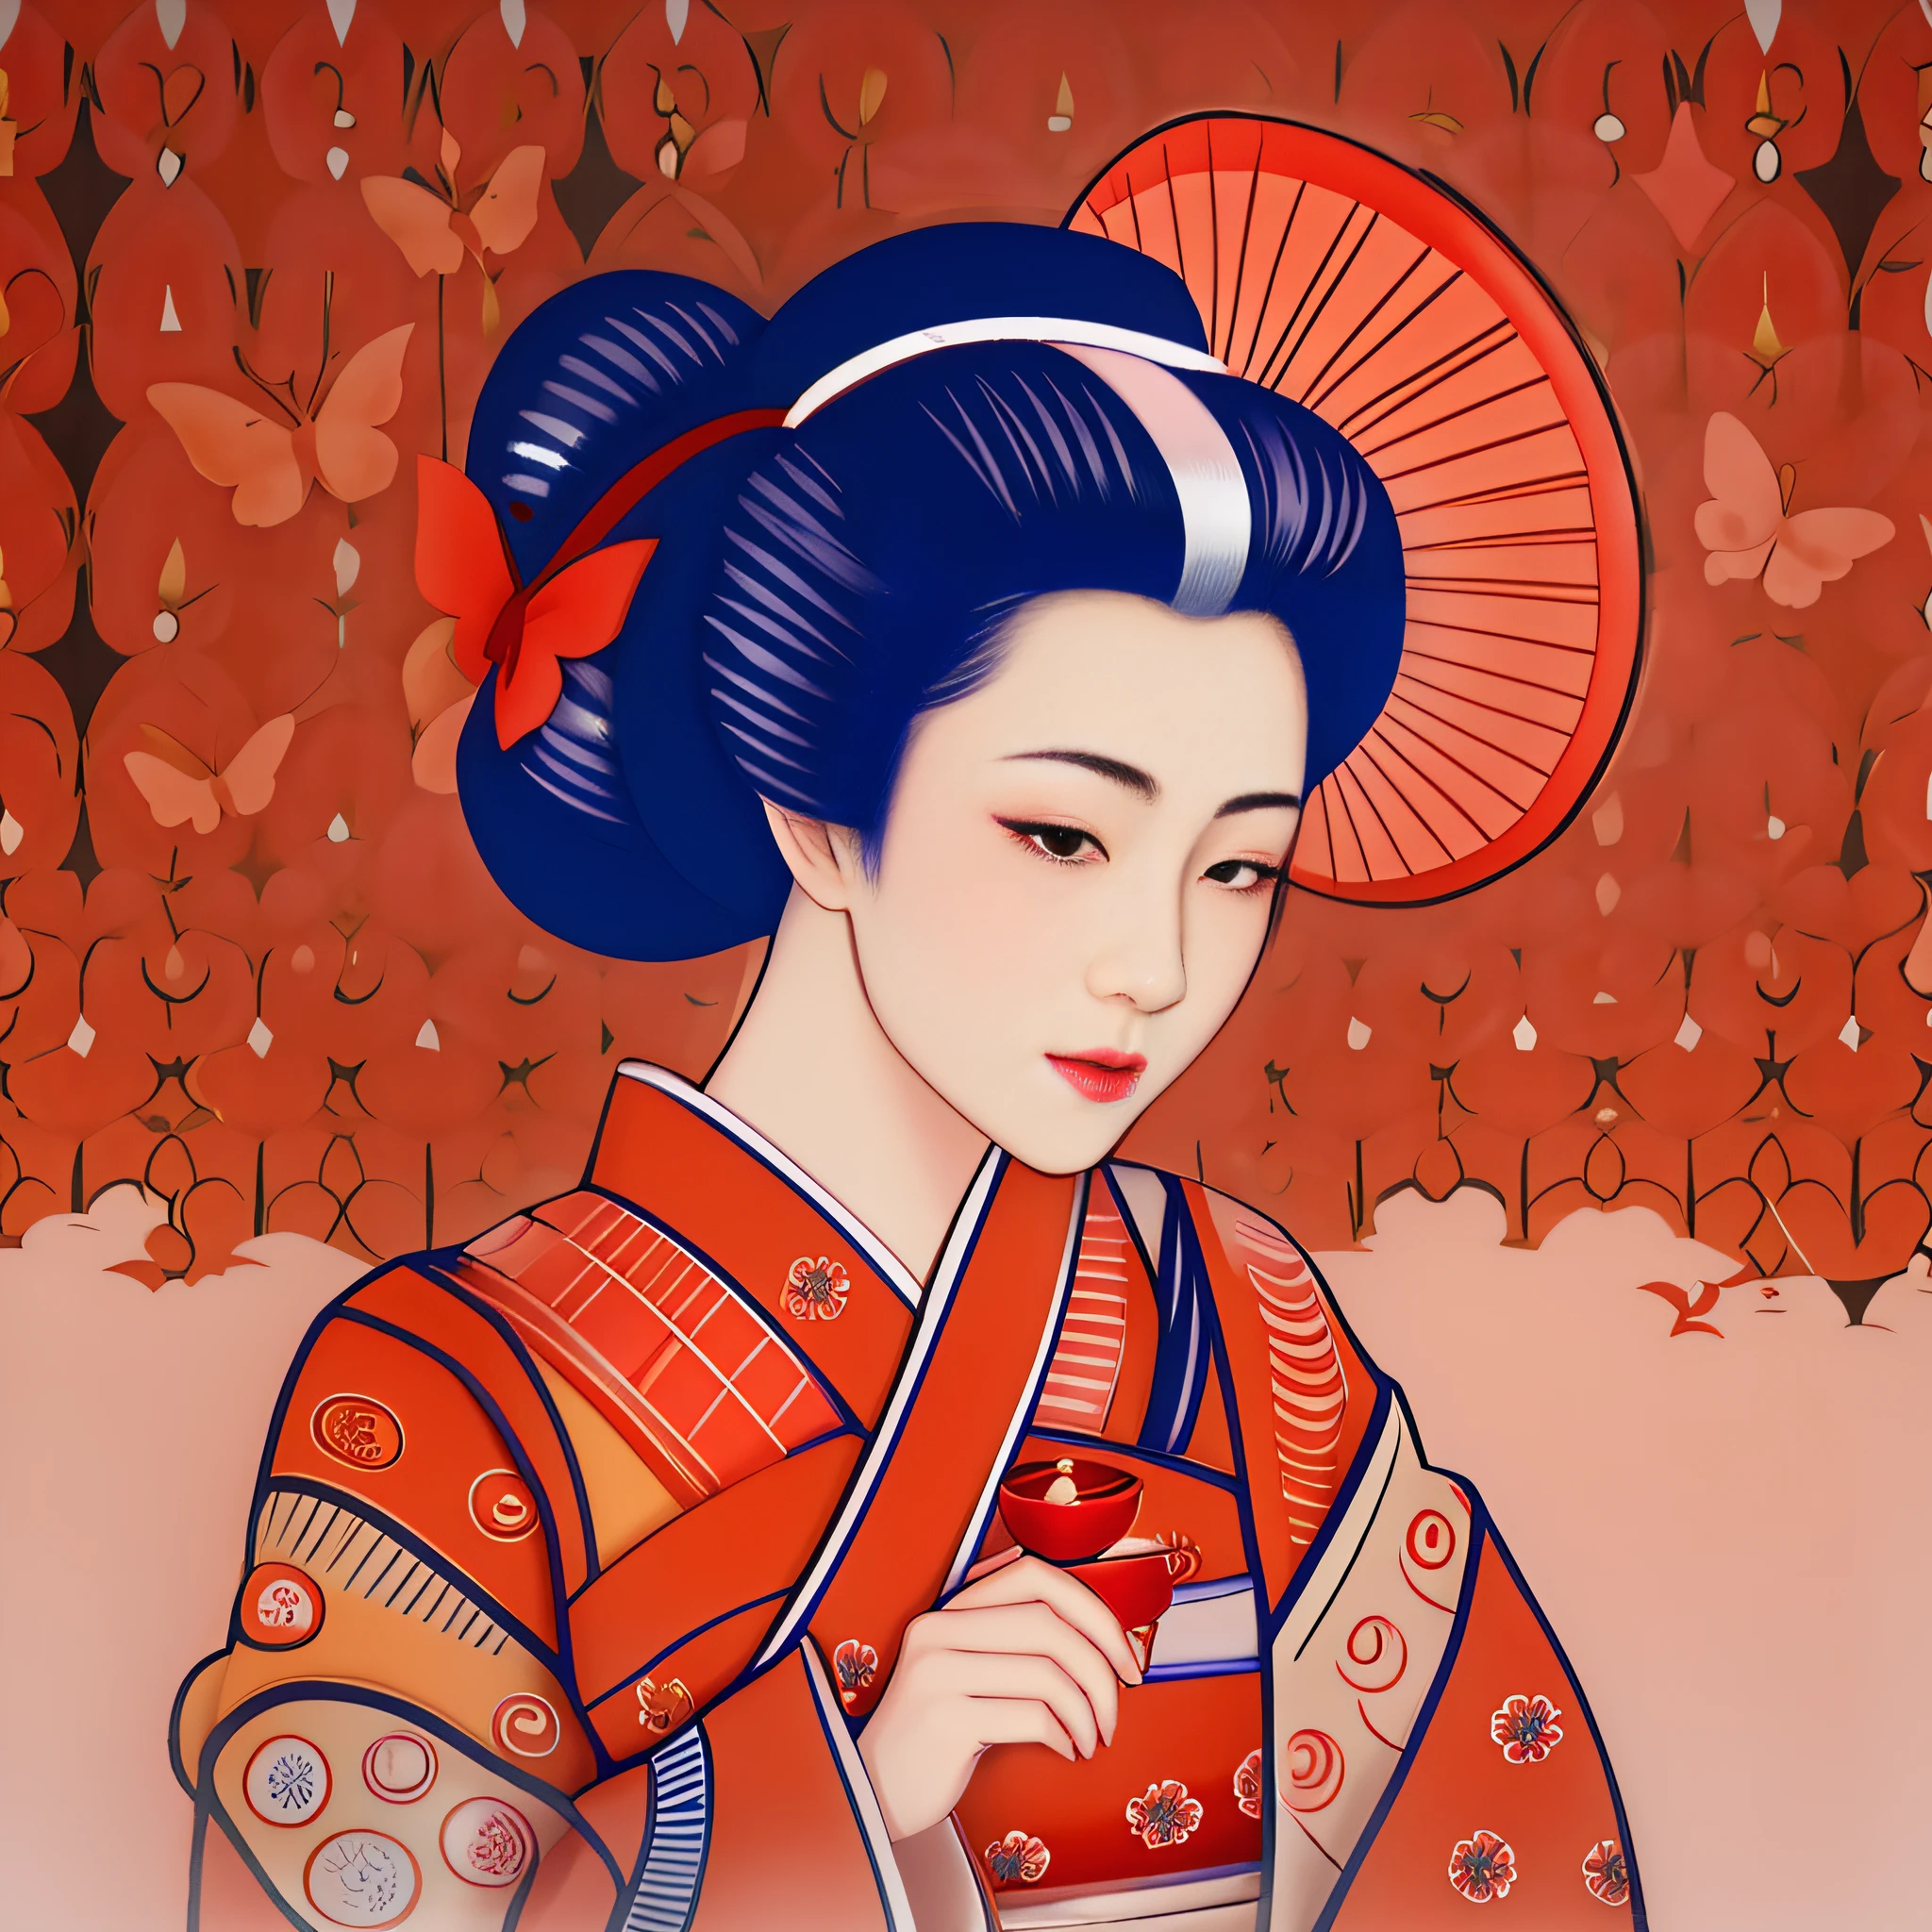 มีผู้หญิงคนหนึ่งในชุดกิโมโนถือร่มสีแดง, สไตล์ศิลปะญี่ปุ่น, เกอิชา japonesa, Retrato de uma เกอิชา bonita, เกอิชาความงาม, Retrato da เกอิชา, แรงบันดาลใจจากอุเอมูระ โชเอ็น, สาวเกอิชาหญิง, ศิลปะที่ไม่ใช่ภาพอุกิโยะ - E, Retrato de uma เกอิชา, ศิลปะญี่ปุ่น, ผู้หญิงญี่ปุ่นที่สง่างาม, เกอิชา.